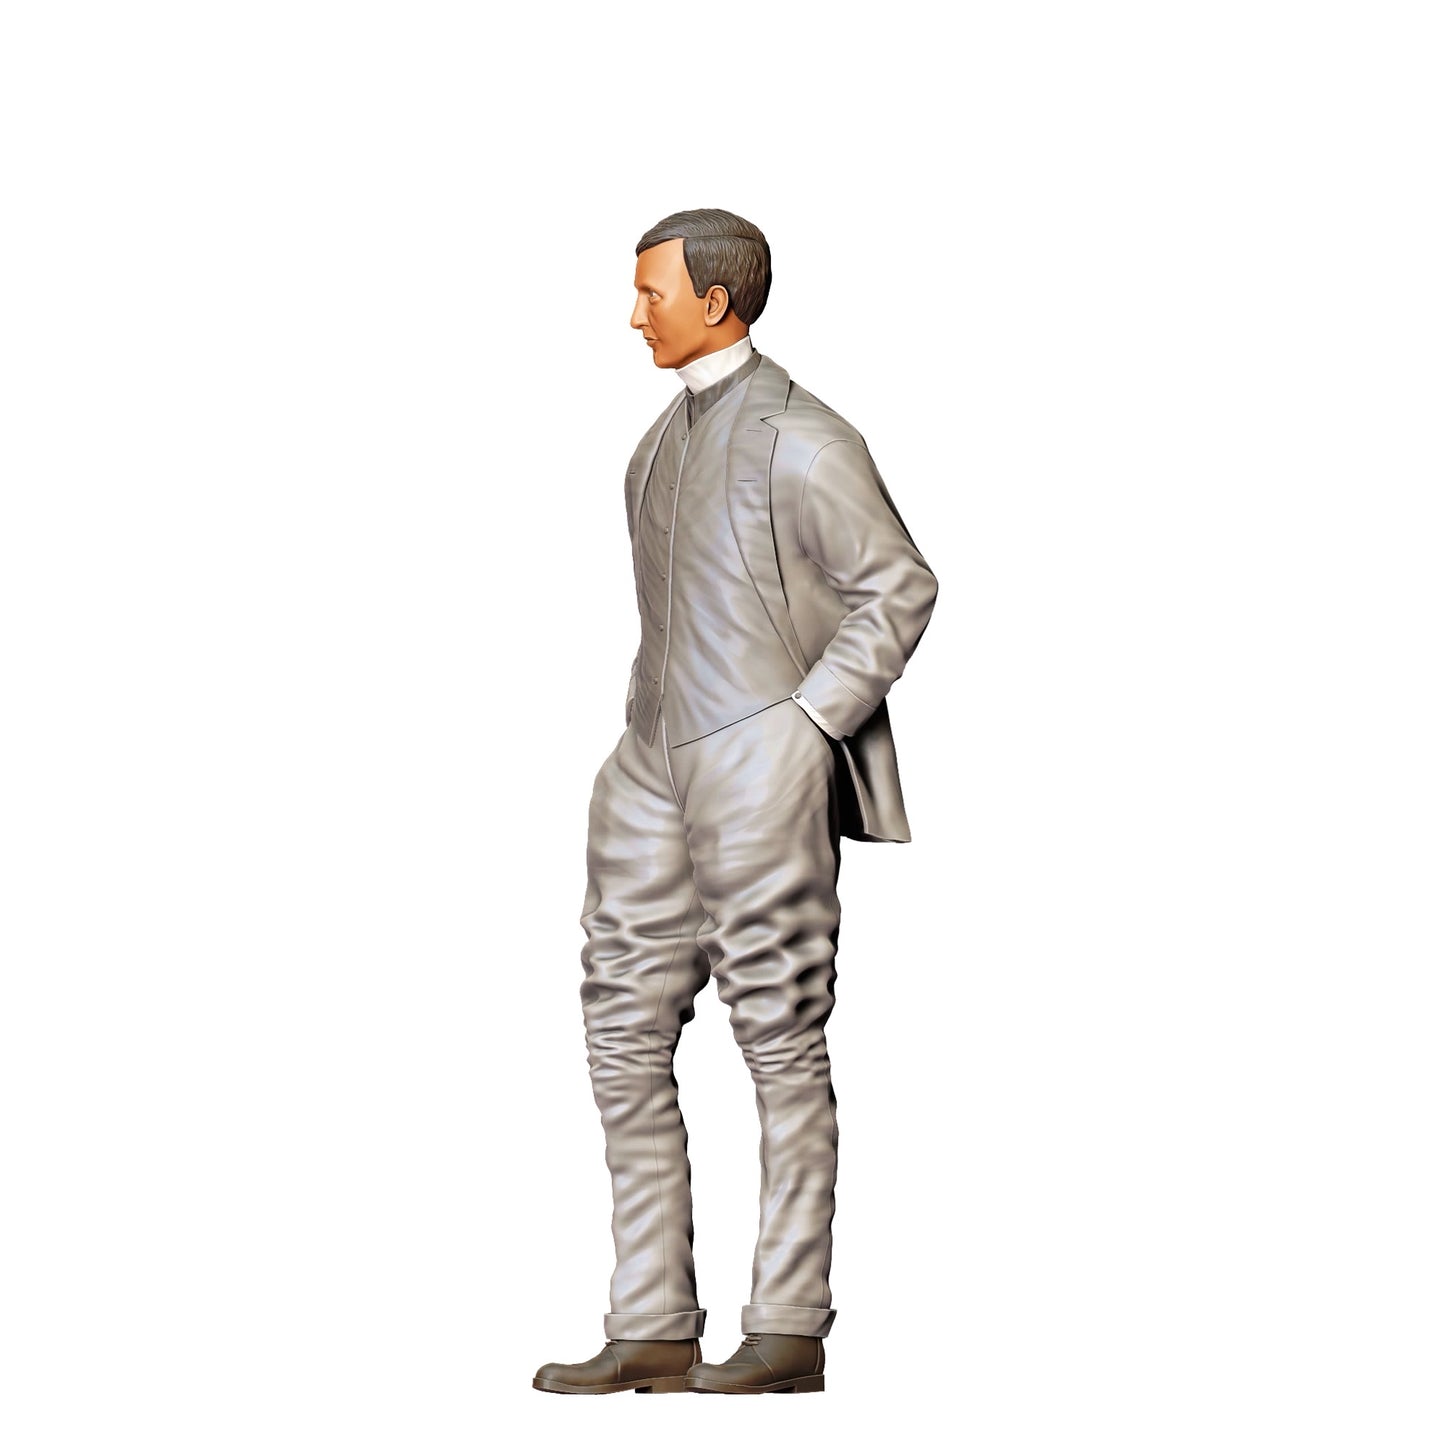 Diorama Modellbau Produktfoto 0: Altmodischer Mann mit Anzug (Ref. Nr. 305)